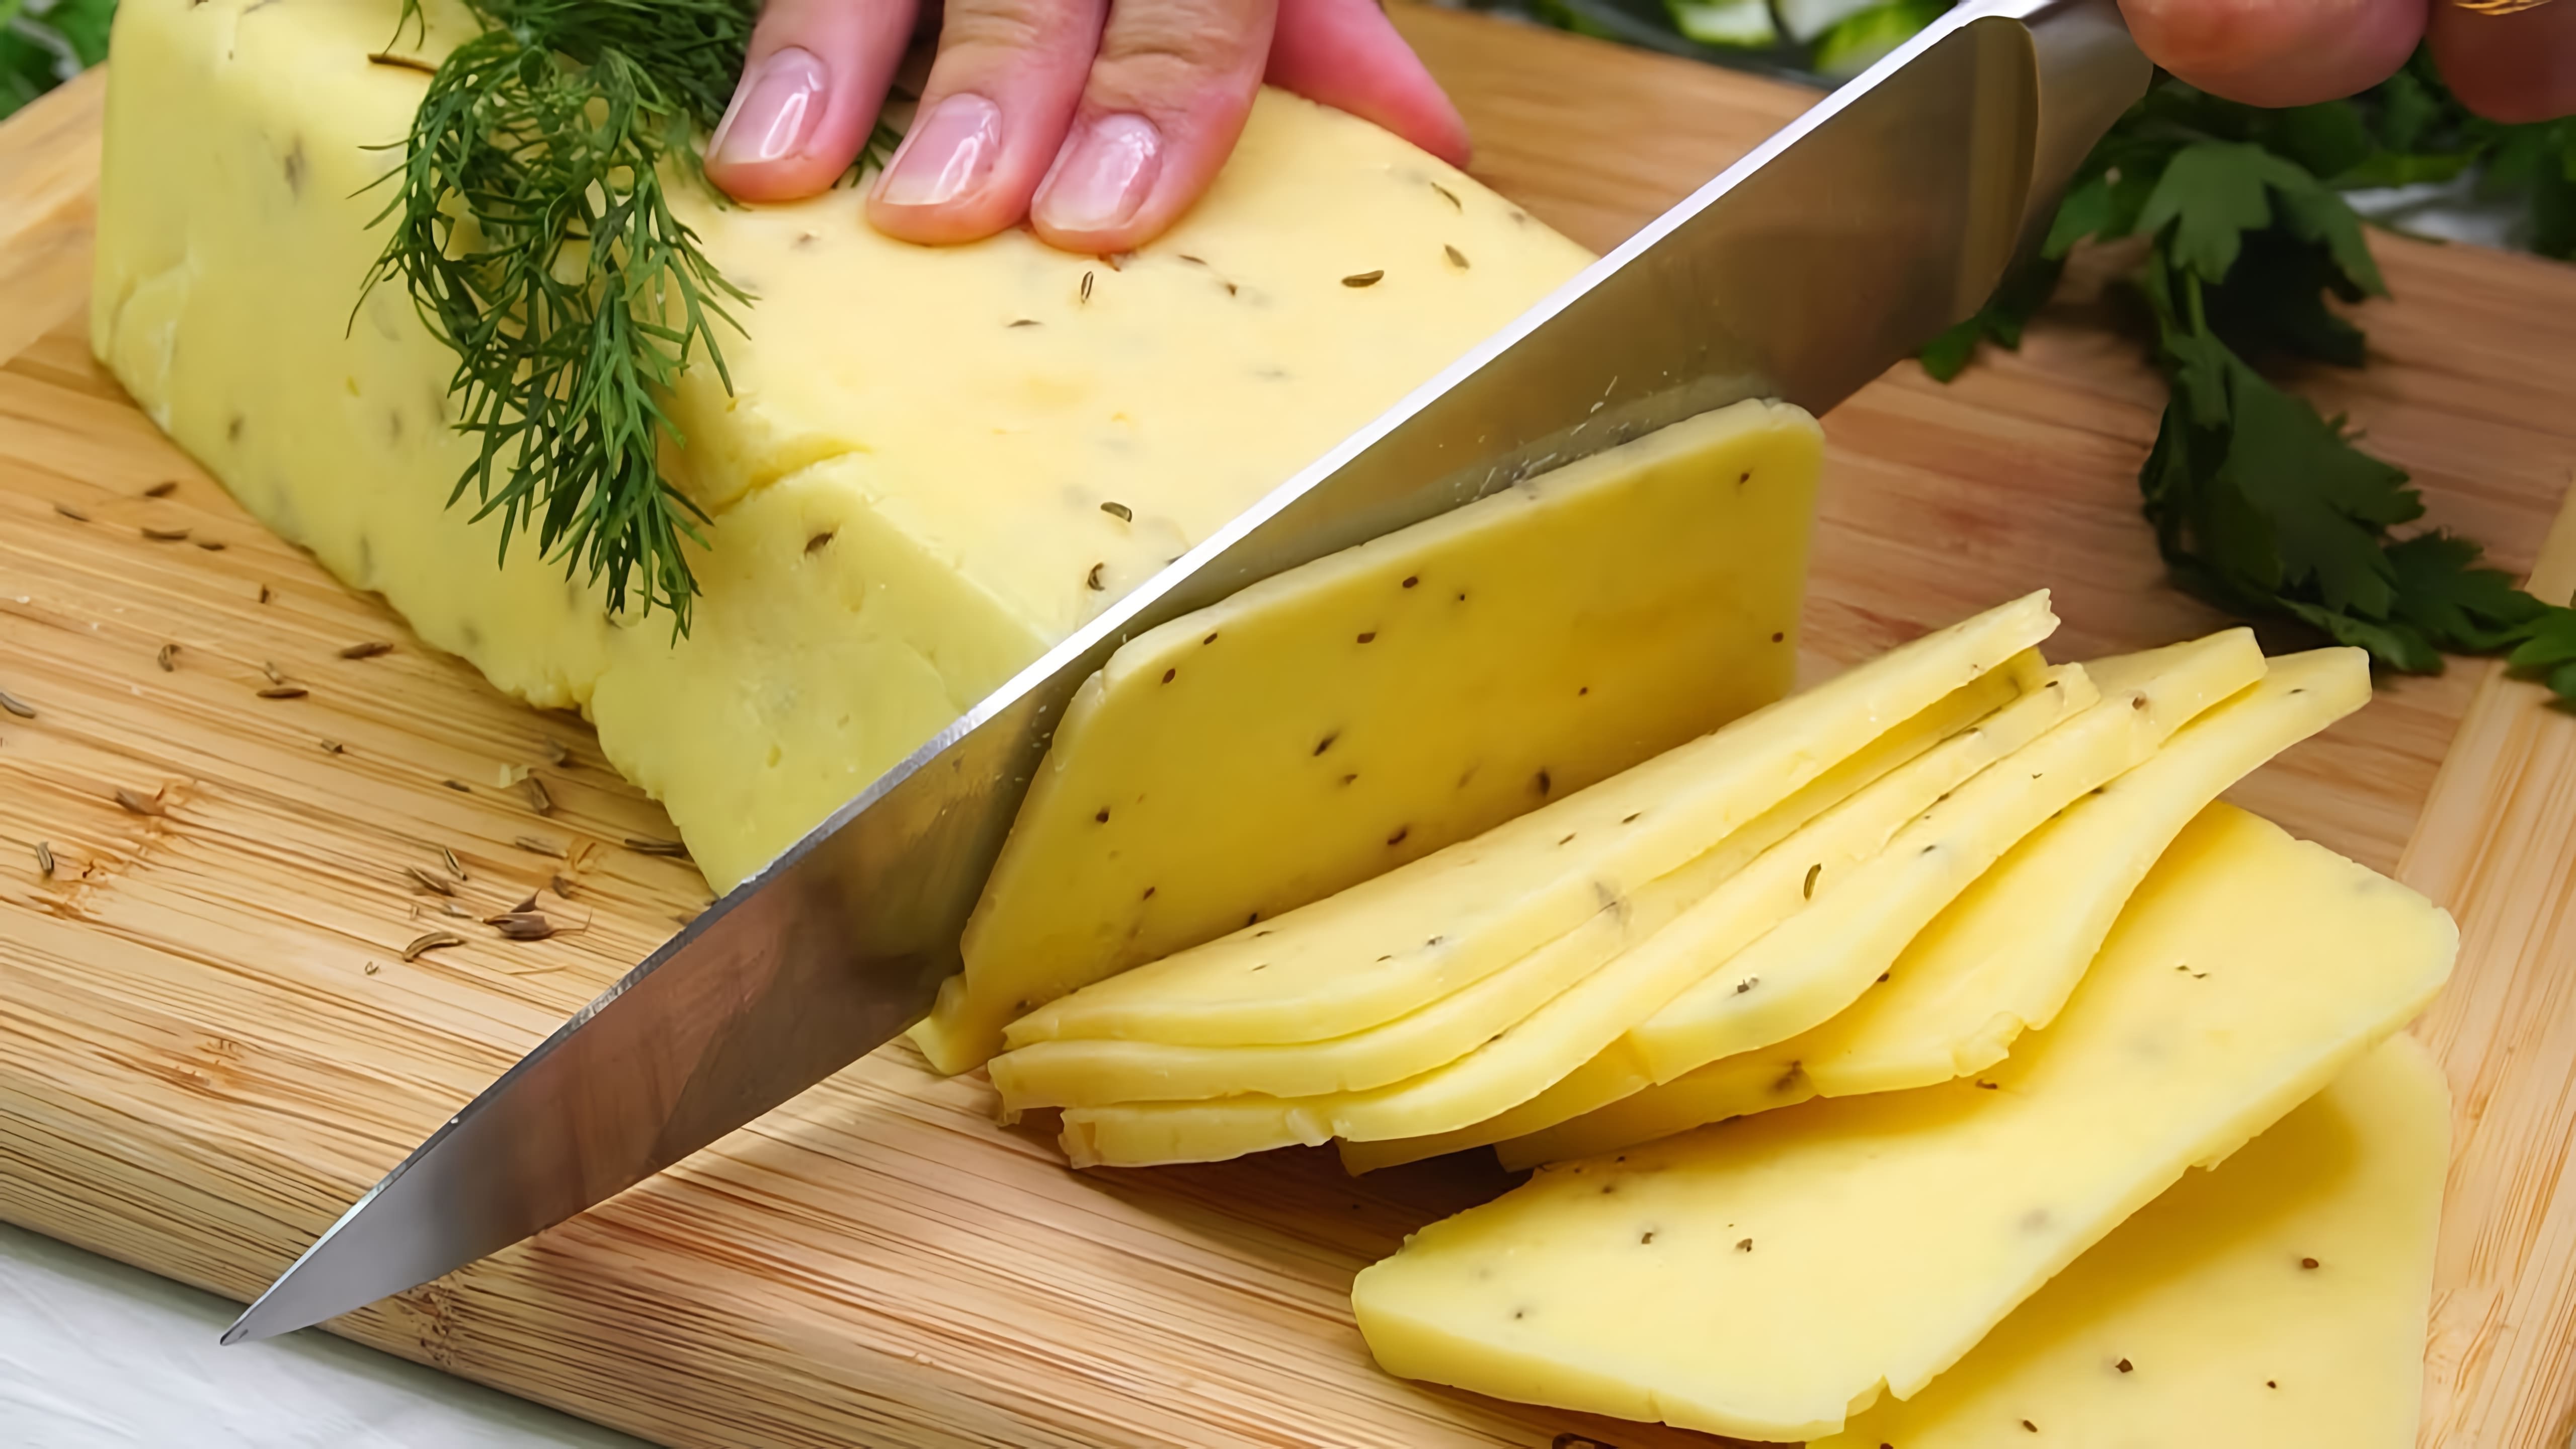 В данном видео демонстрируется процесс приготовления домашнего твердого сыра